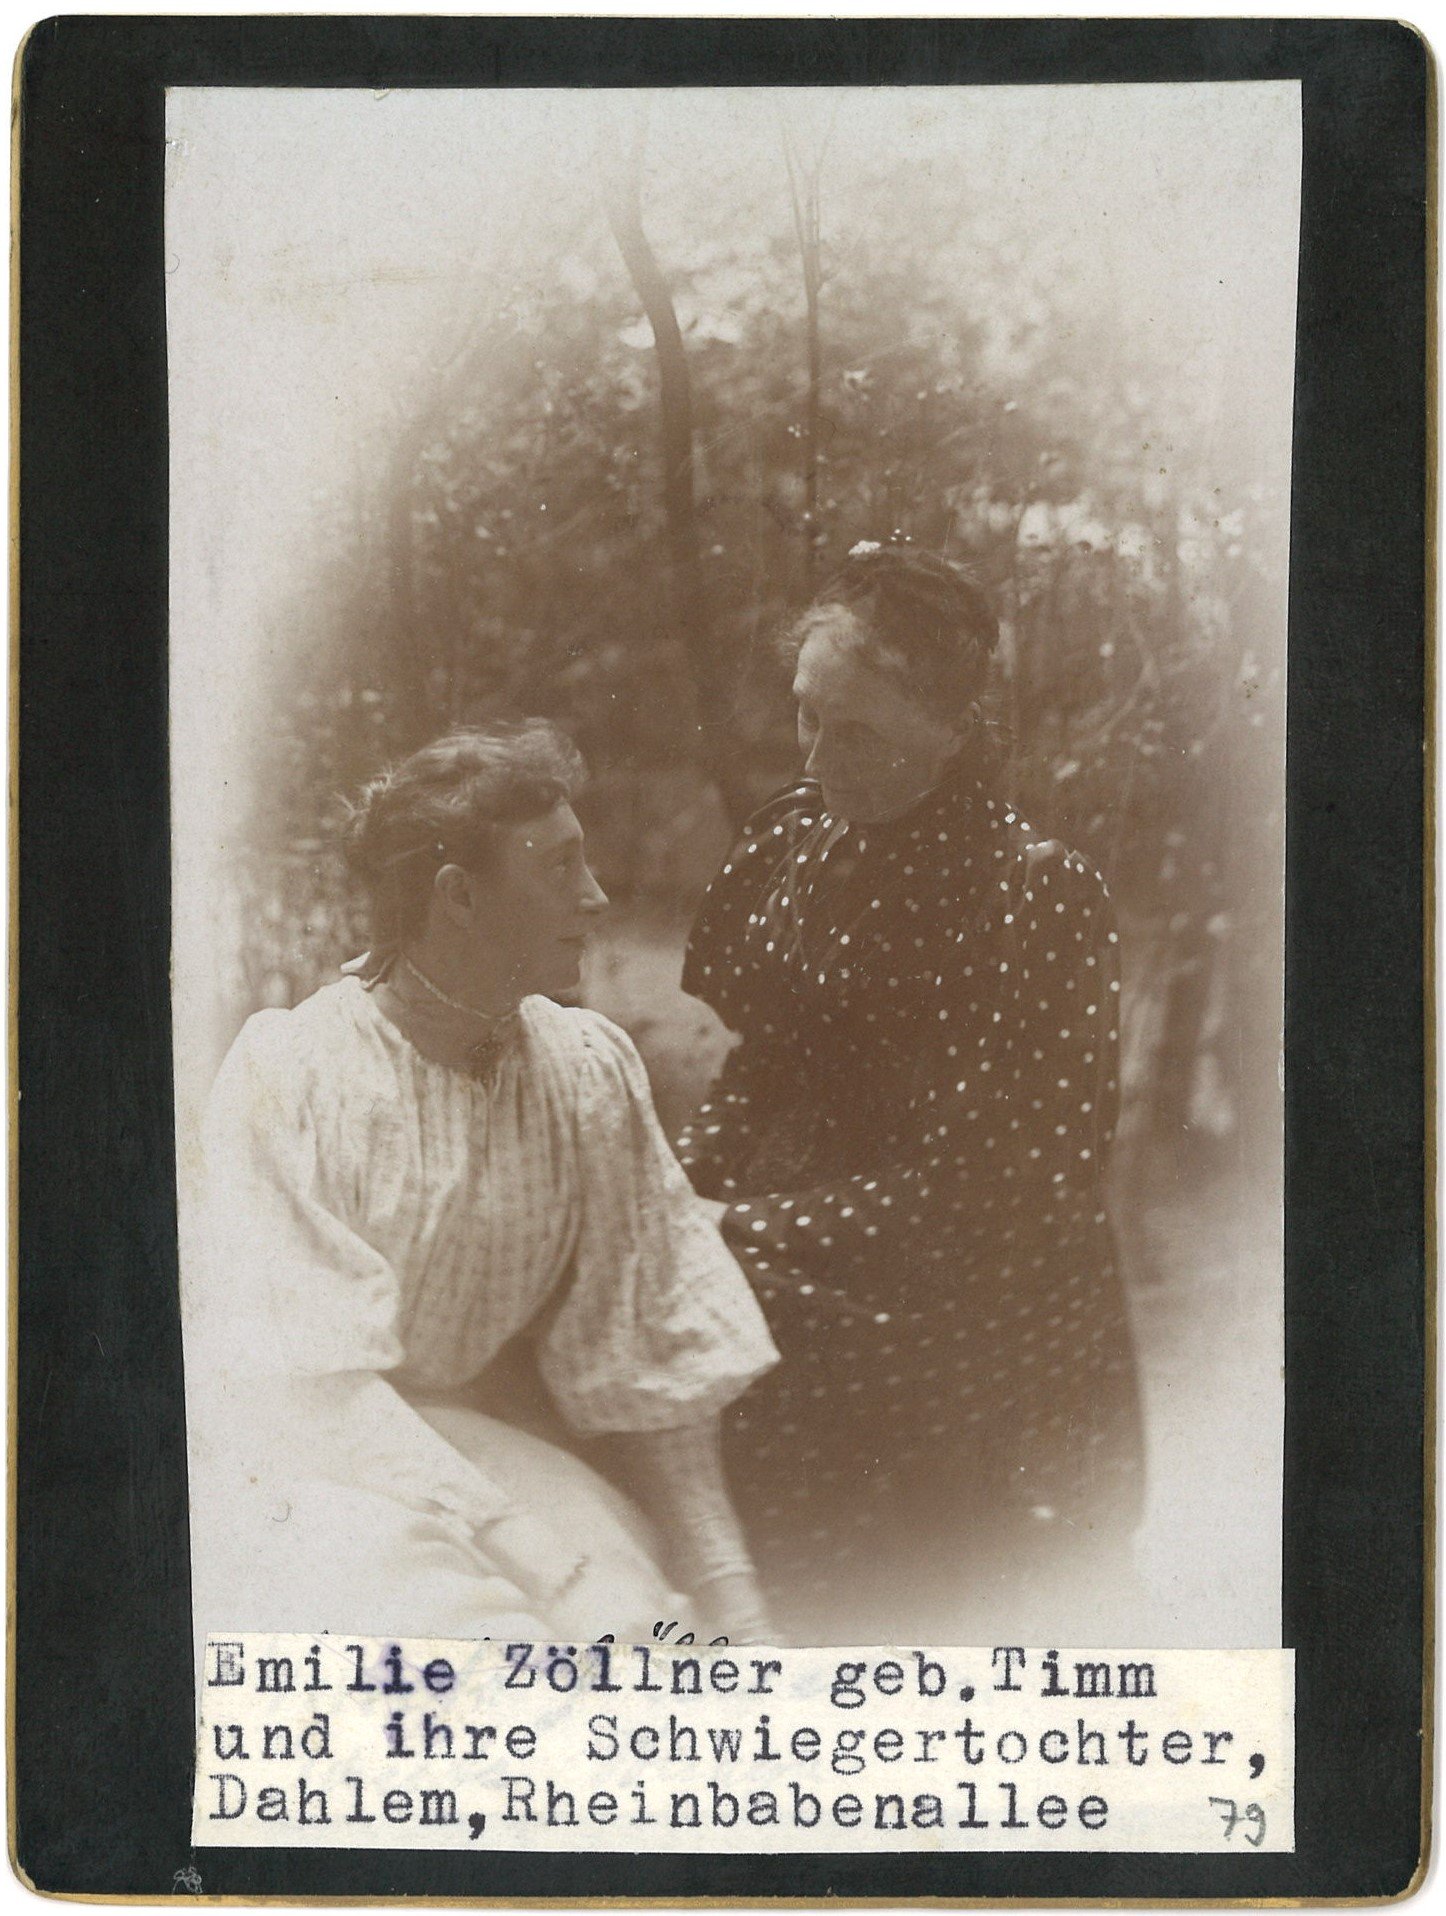 Zöllner, Emilie, geb. Timm (1828-1924), Frau des Juristen Karl Zöllner, mit Schwiegertochter (Landesgeschichtliche Vereinigung für die Mark Brandenburg e.V., Archiv CC BY)